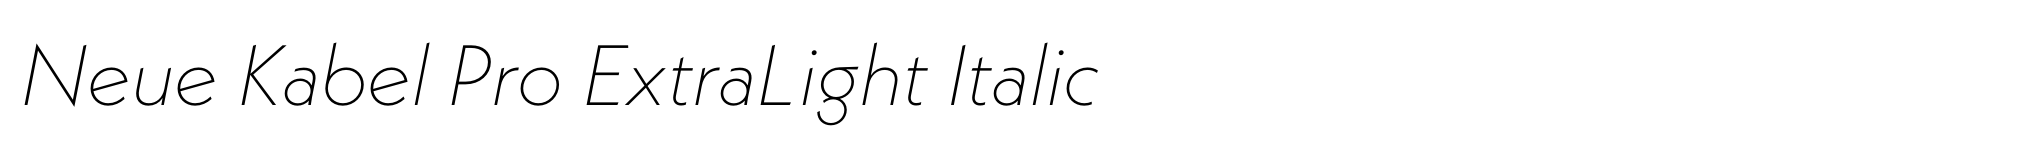 Neue Kabel Pro ExtraLight Italic image